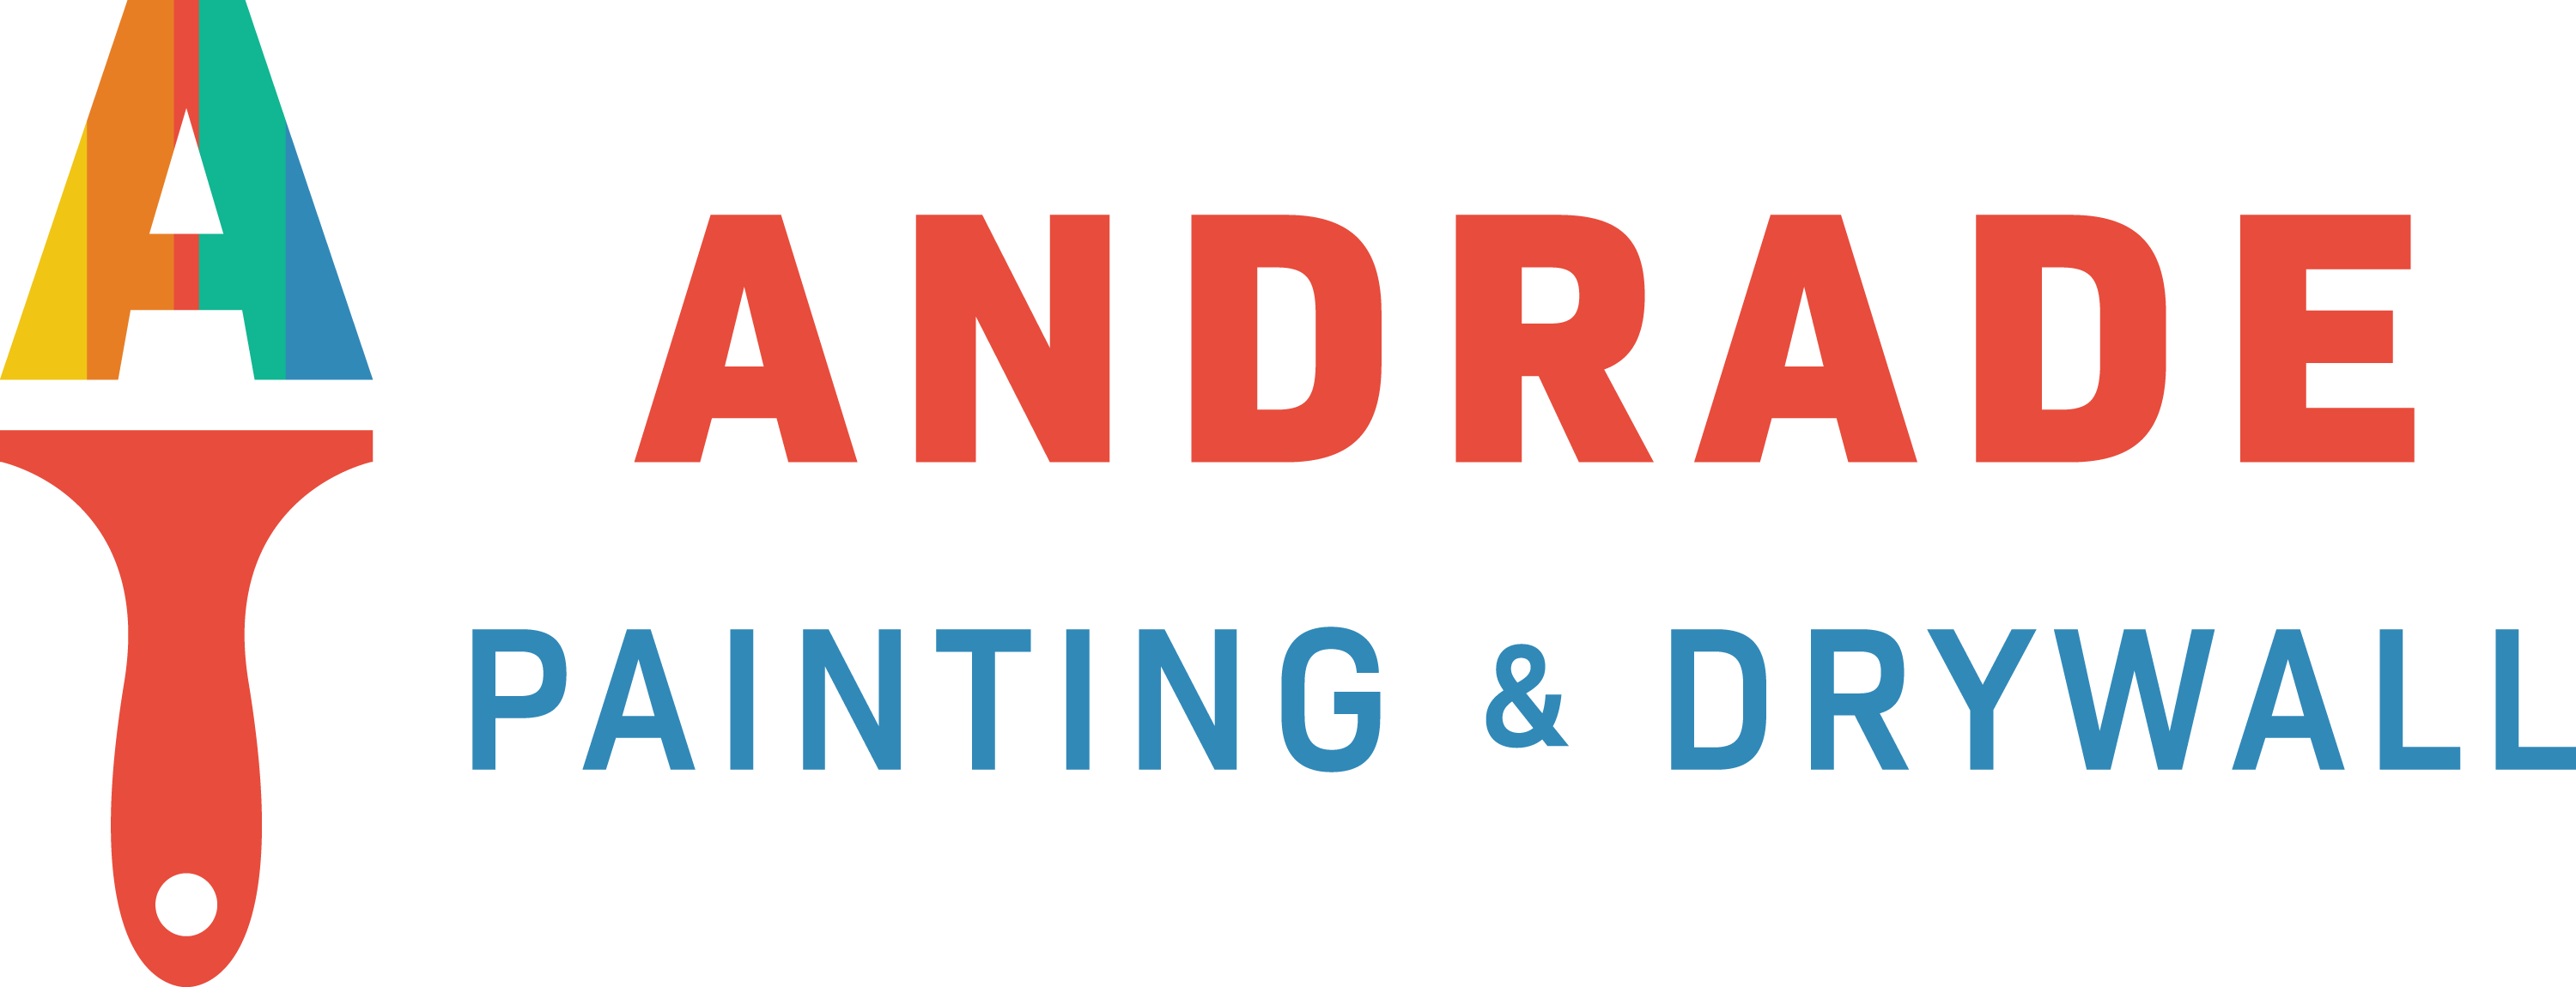 Andrade Painting & Drywall